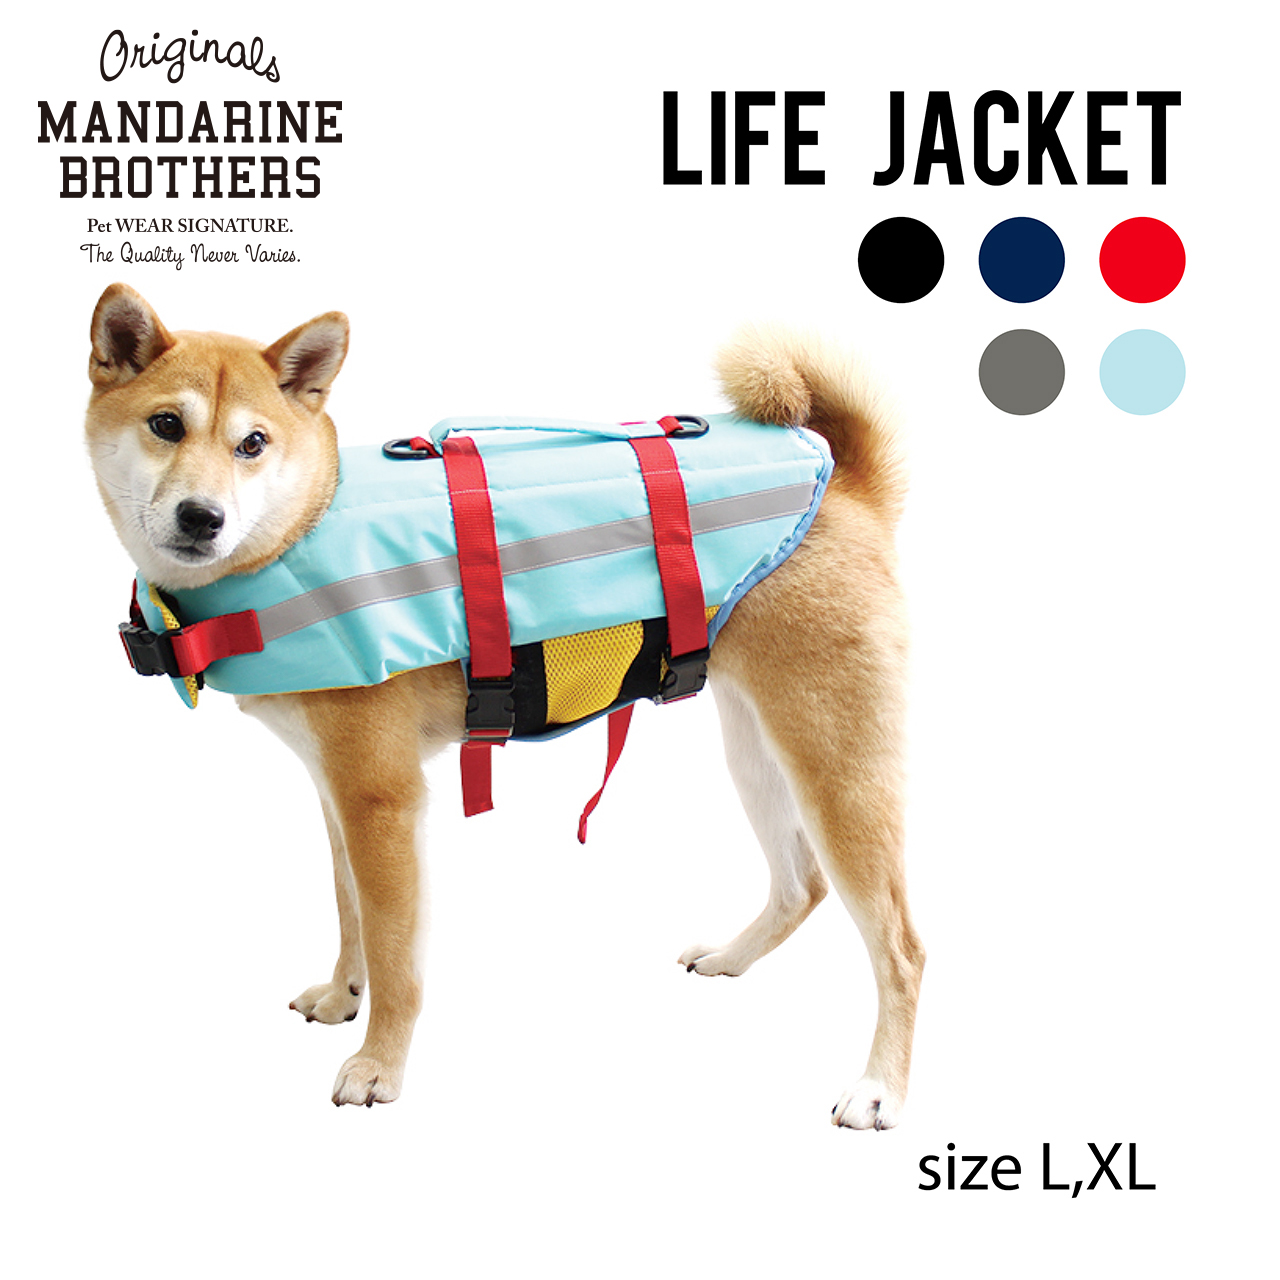 楽天市場 犬 ライフジャケット 犬用ライフジャケット 犬のライフジャケット おしゃれ Mandarinebros Lifejacket L Xl マンダリンブラザーズ